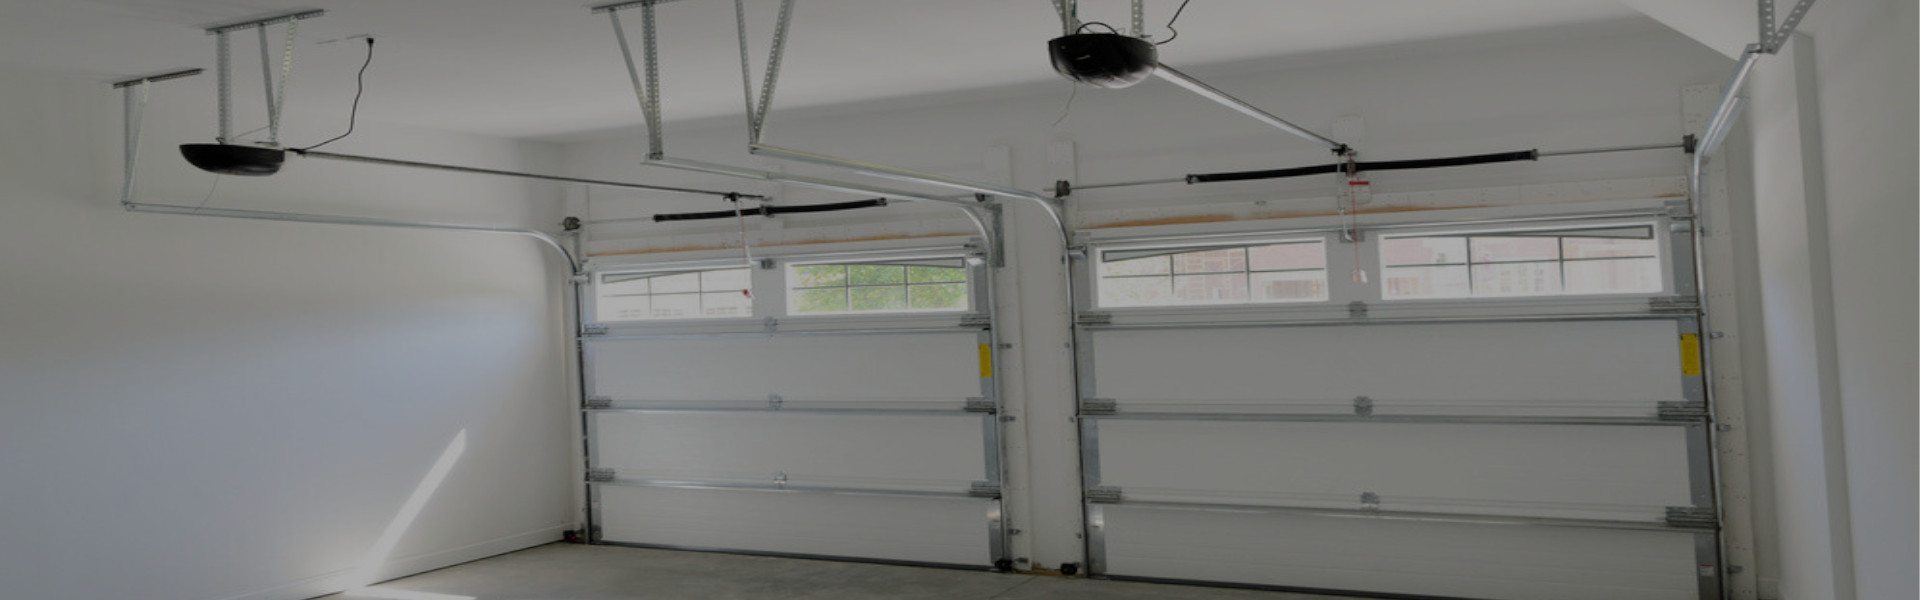 Slider Garage Door Repair, Glaziers in Purley, Kenley, CR8